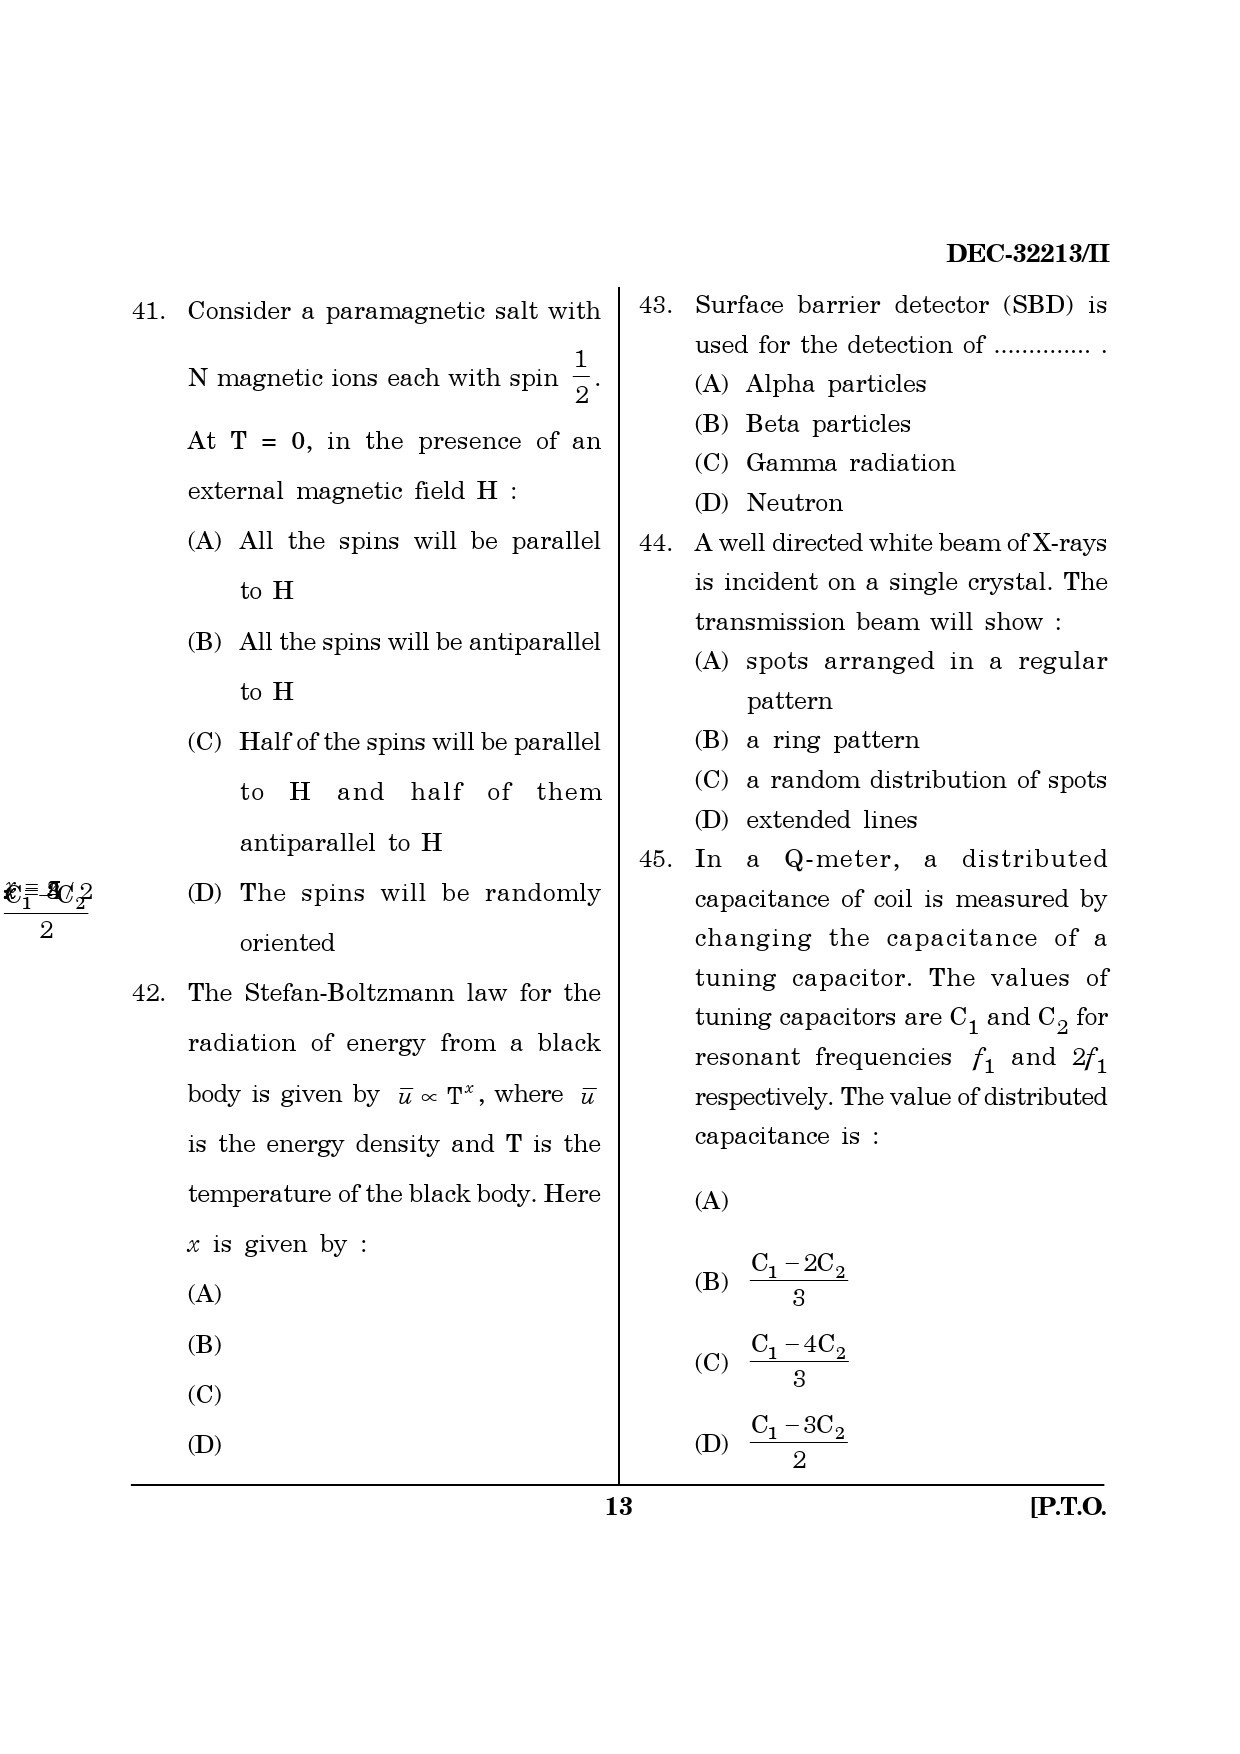 Maharashtra SET Physics Question Paper II December 2013 12